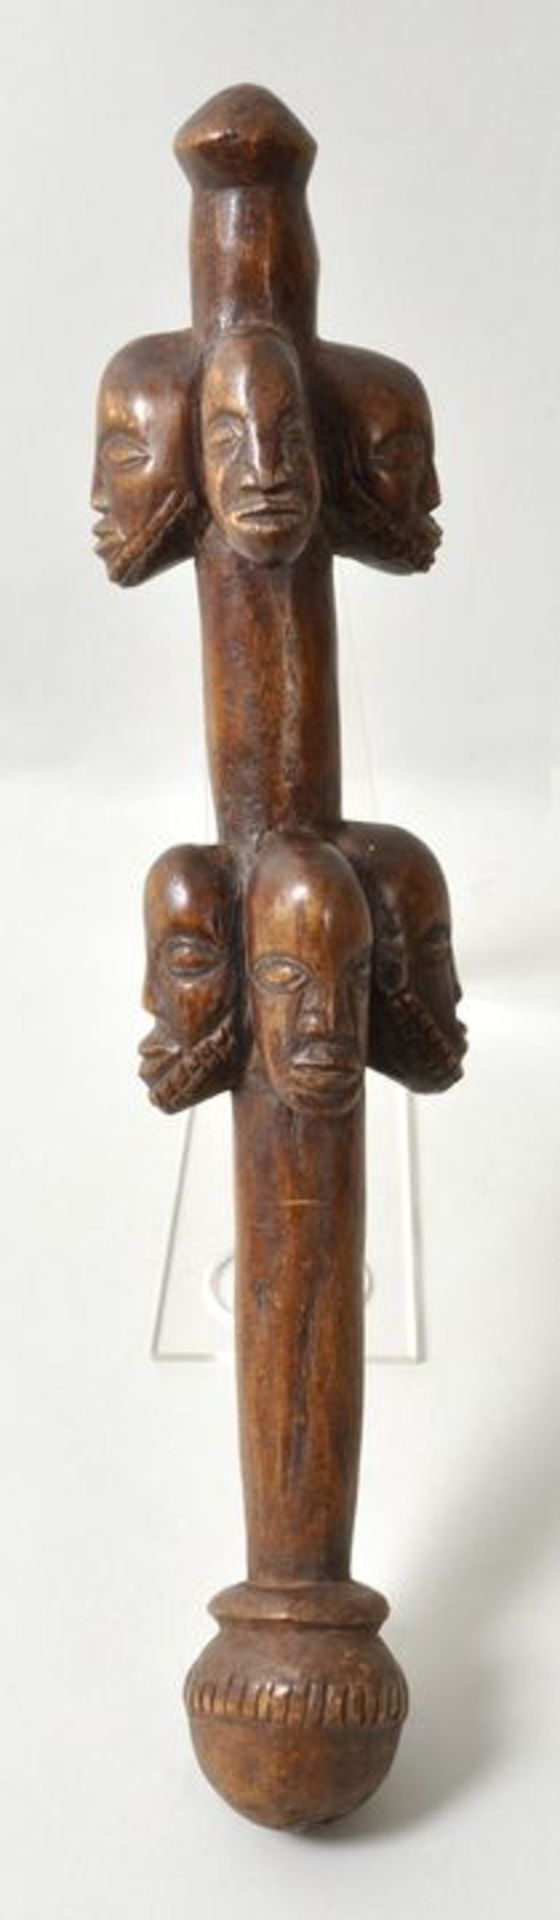 Stößel oder Zepter, Hemba, KongoHolz, geschnitzter Stab mit zwei Ebenen männlicher und weiblicher